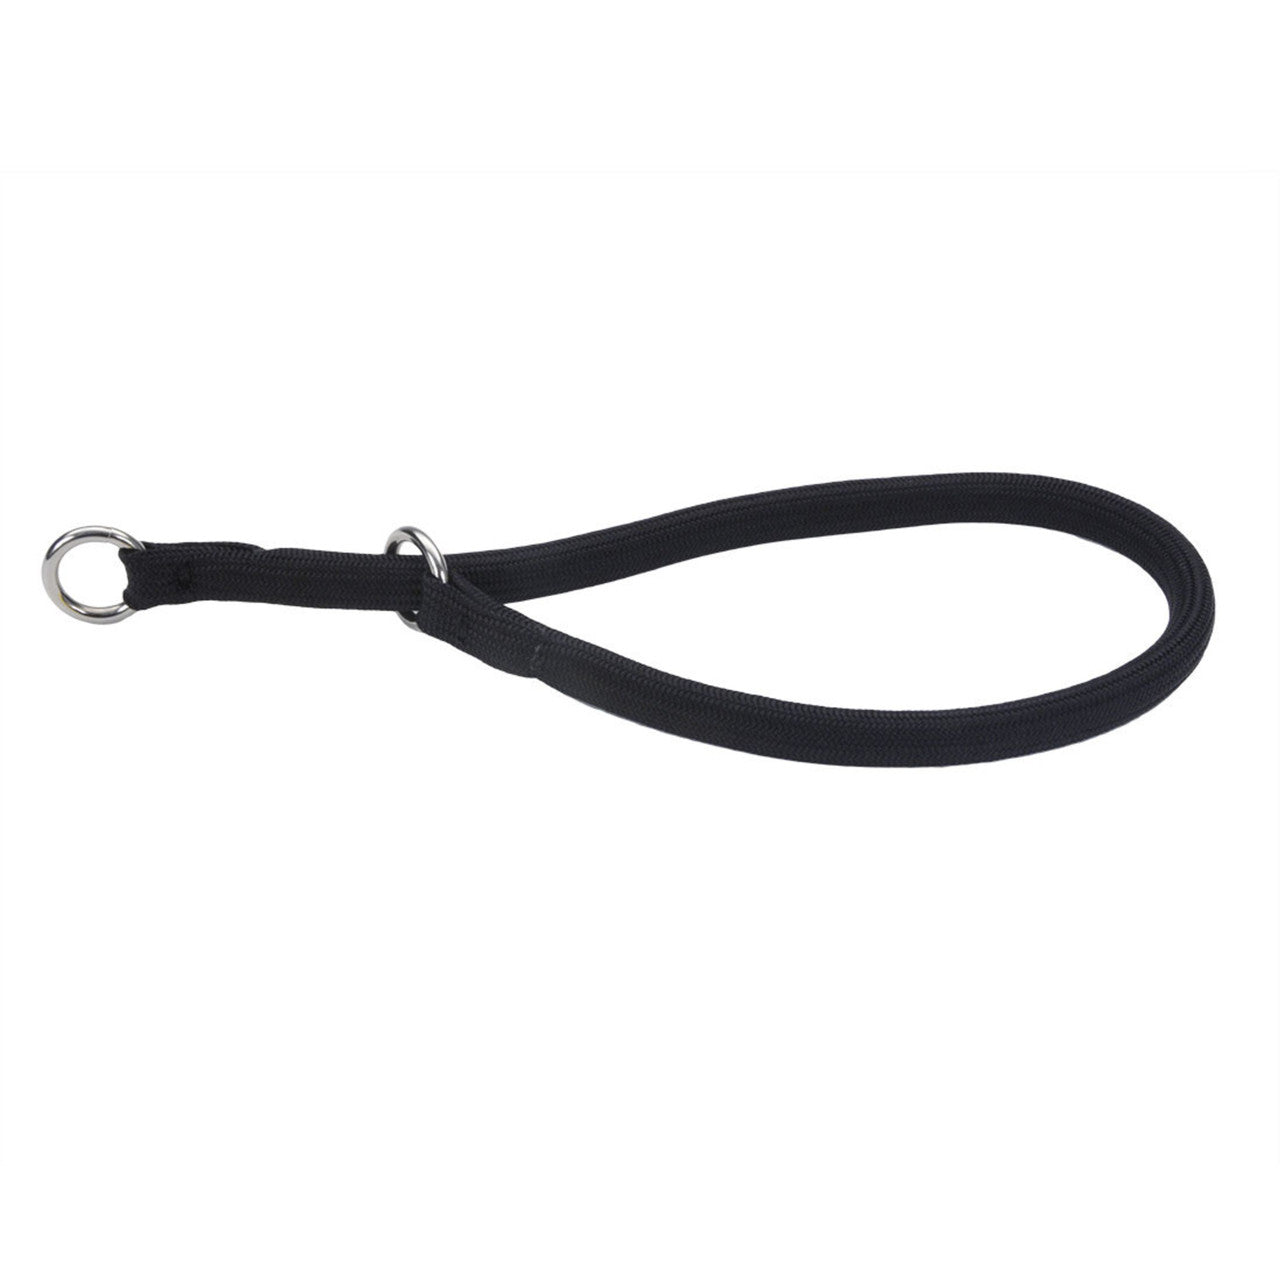 Coastal Round Nylon Training Dog Collar Black 3/8 in x 20 in